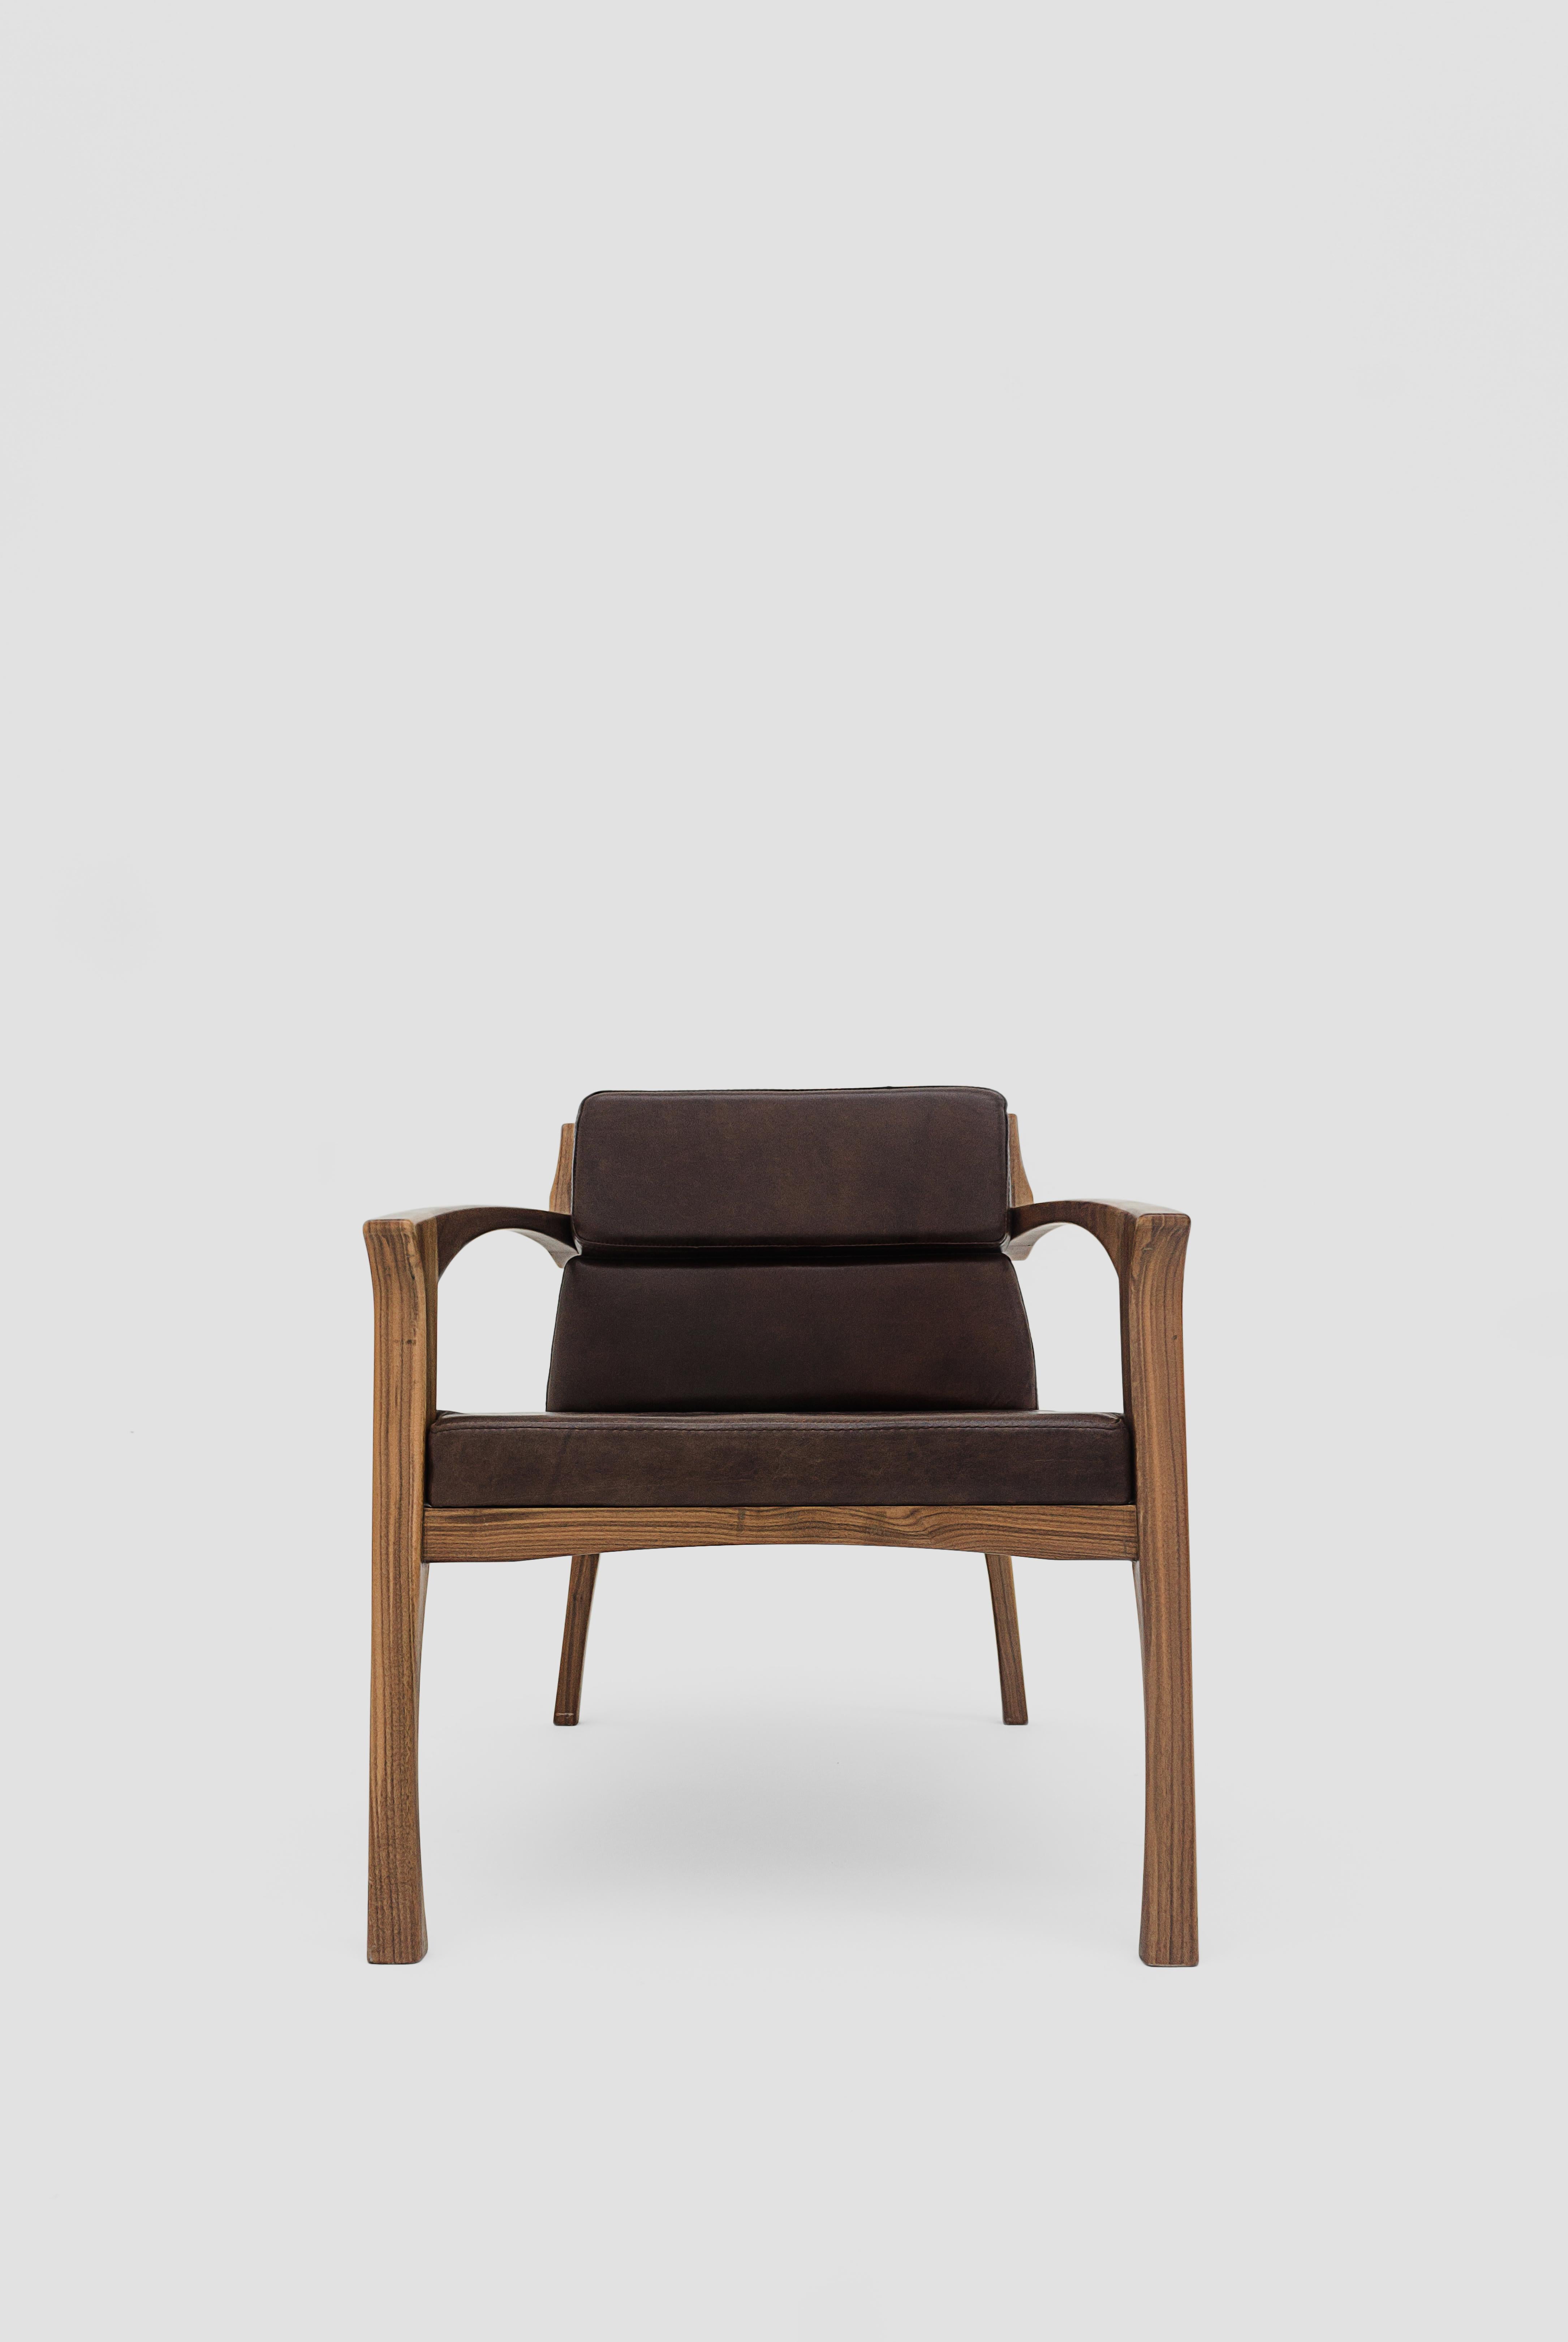 Lot de 2 fauteuils Helmut marron par Arturo Verástegui
Dimensions : D 72 x L 76 x H 70 cm
Matériaux : bois de noyer, cuir.

Fauteuil en noyer vert massif, cuir.

Arturo Verástegui est le directeur et fondateur de Breuer depuis 2015. Arturo a